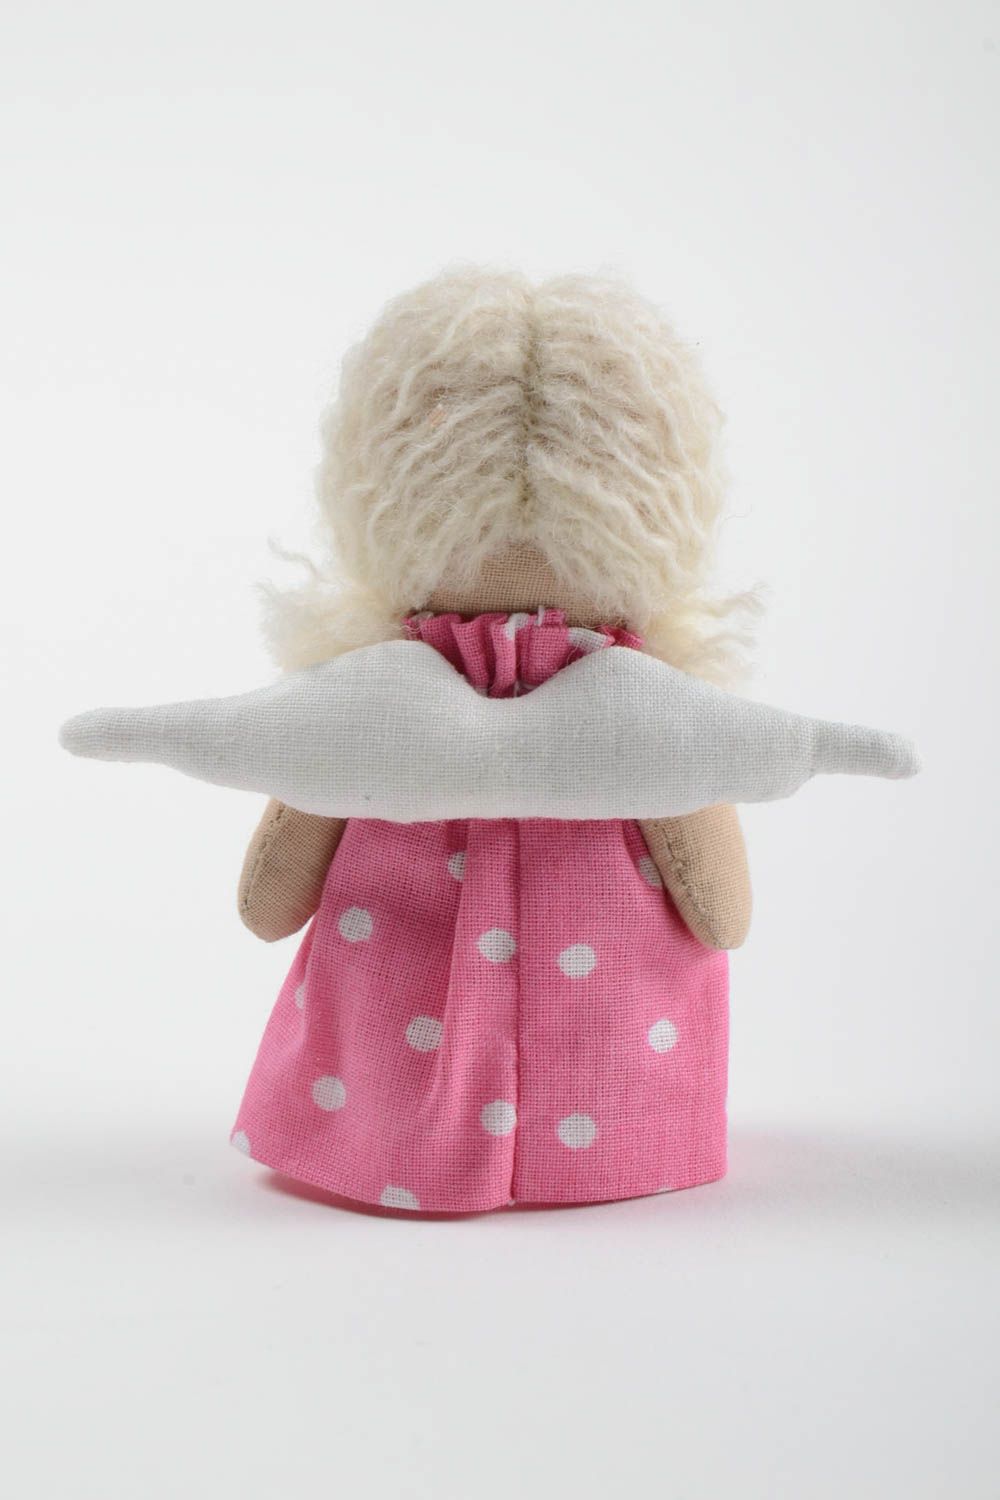 Handmade Stoff Puppe Kinder Spielzeug Engel Geschenk klein im rosa Kleid foto 3